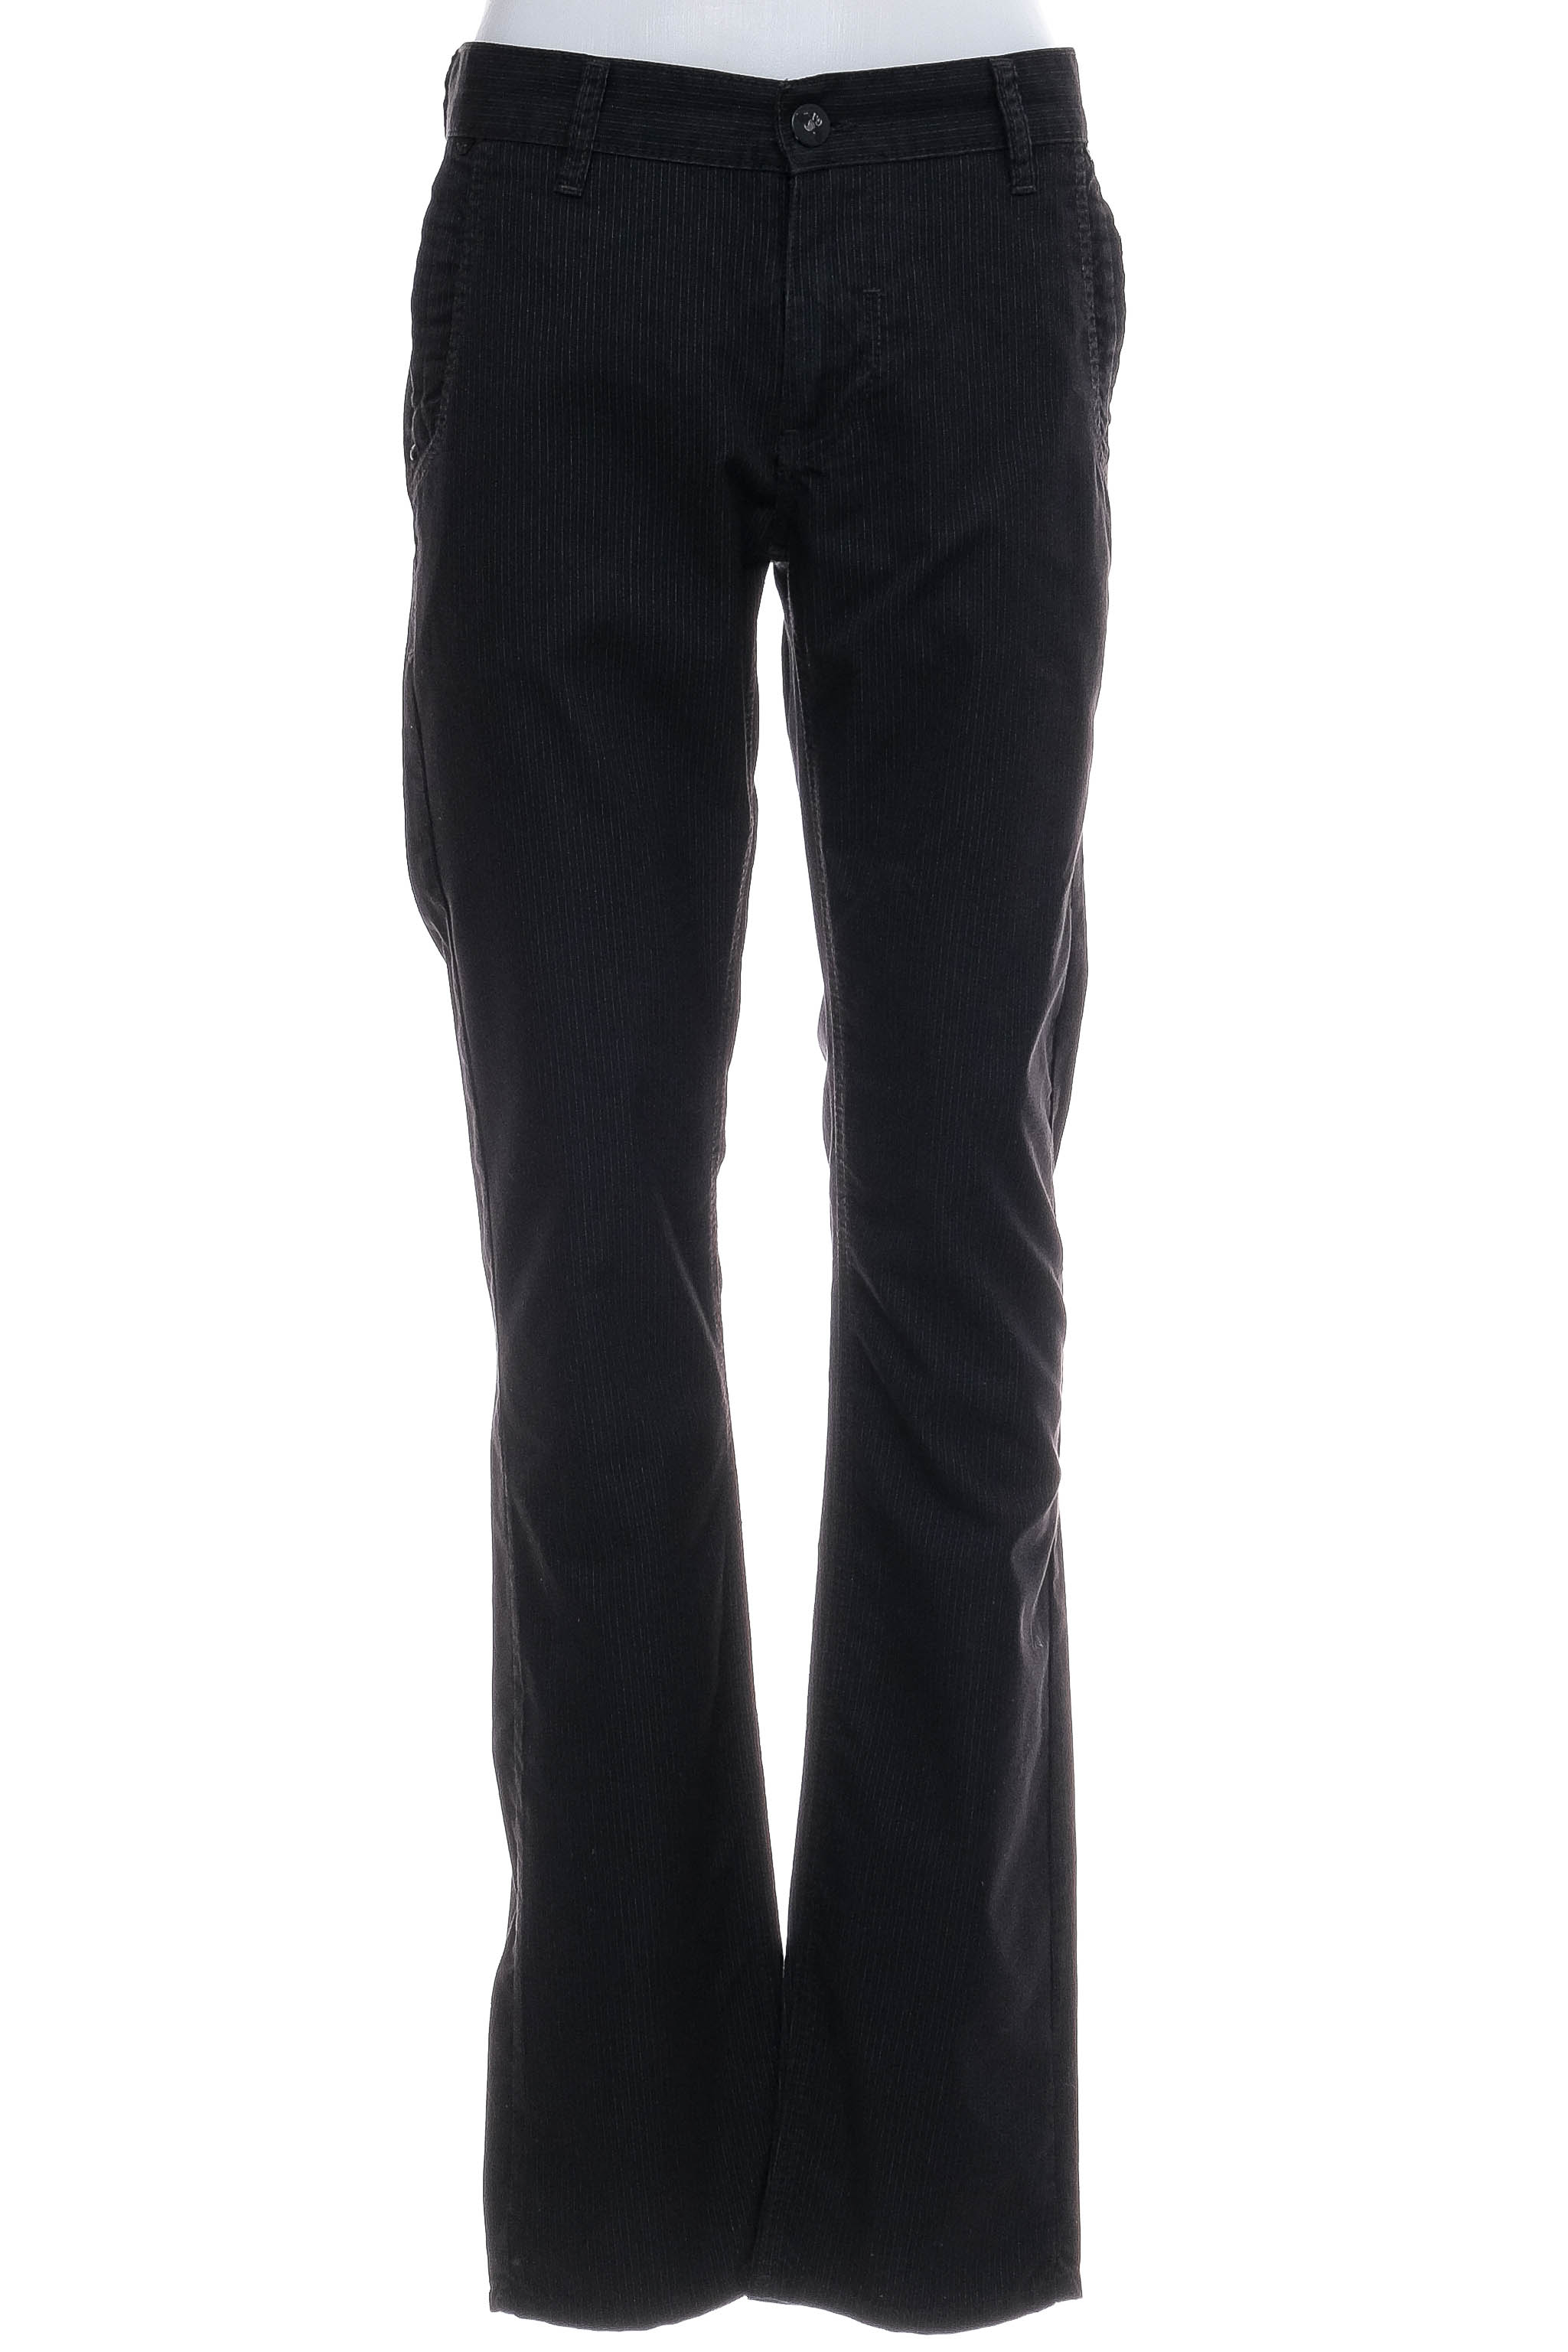 Pantalon pentru bărbați - Armani Jeans - 0